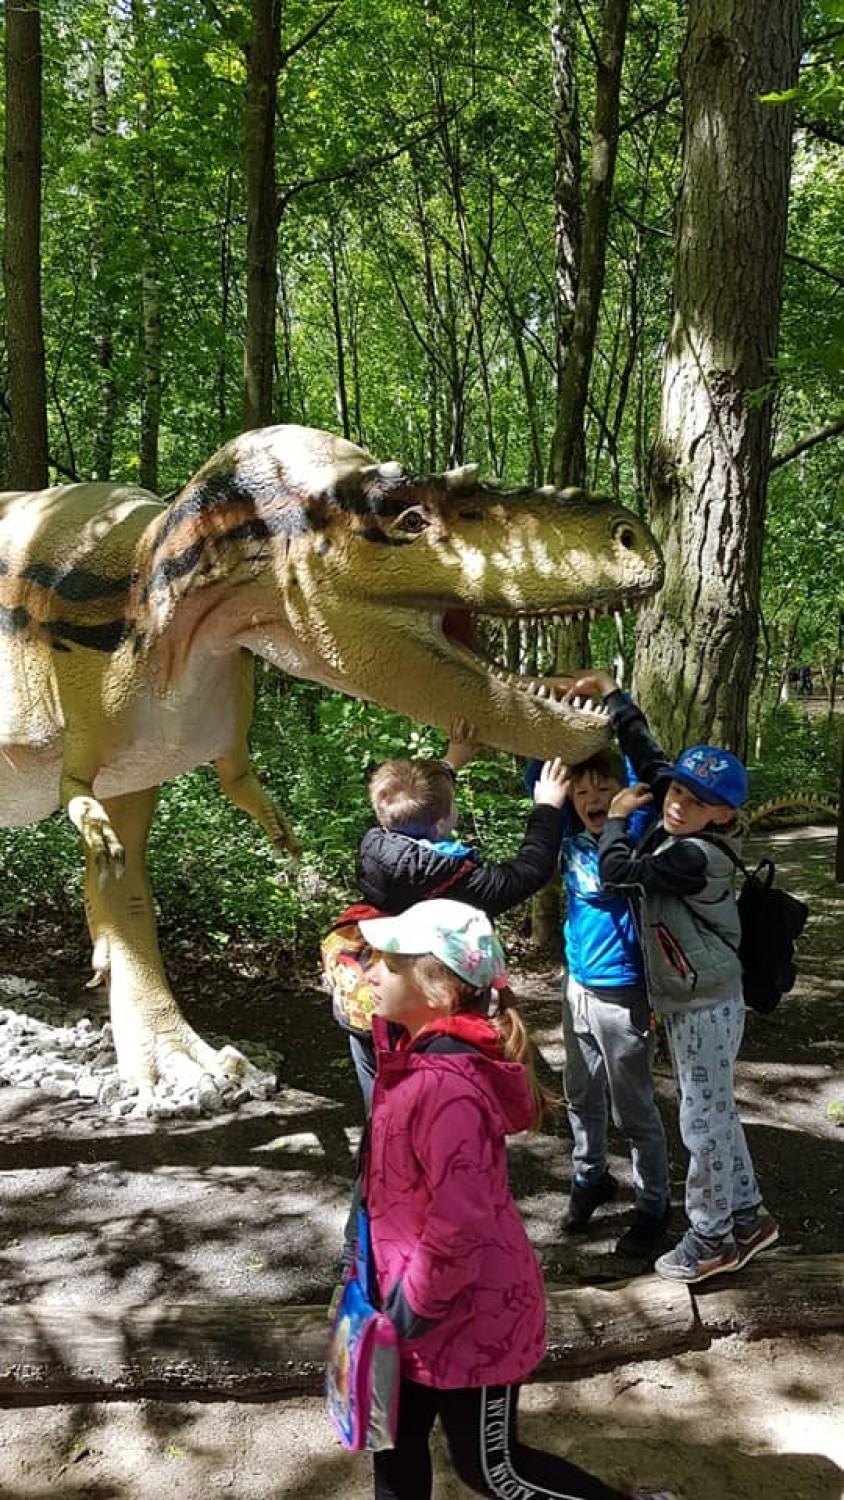 Uczniowie z SSP w Jeżyczkach na wycieczce w Parku Dinozaurów [ZDJĘCIA]